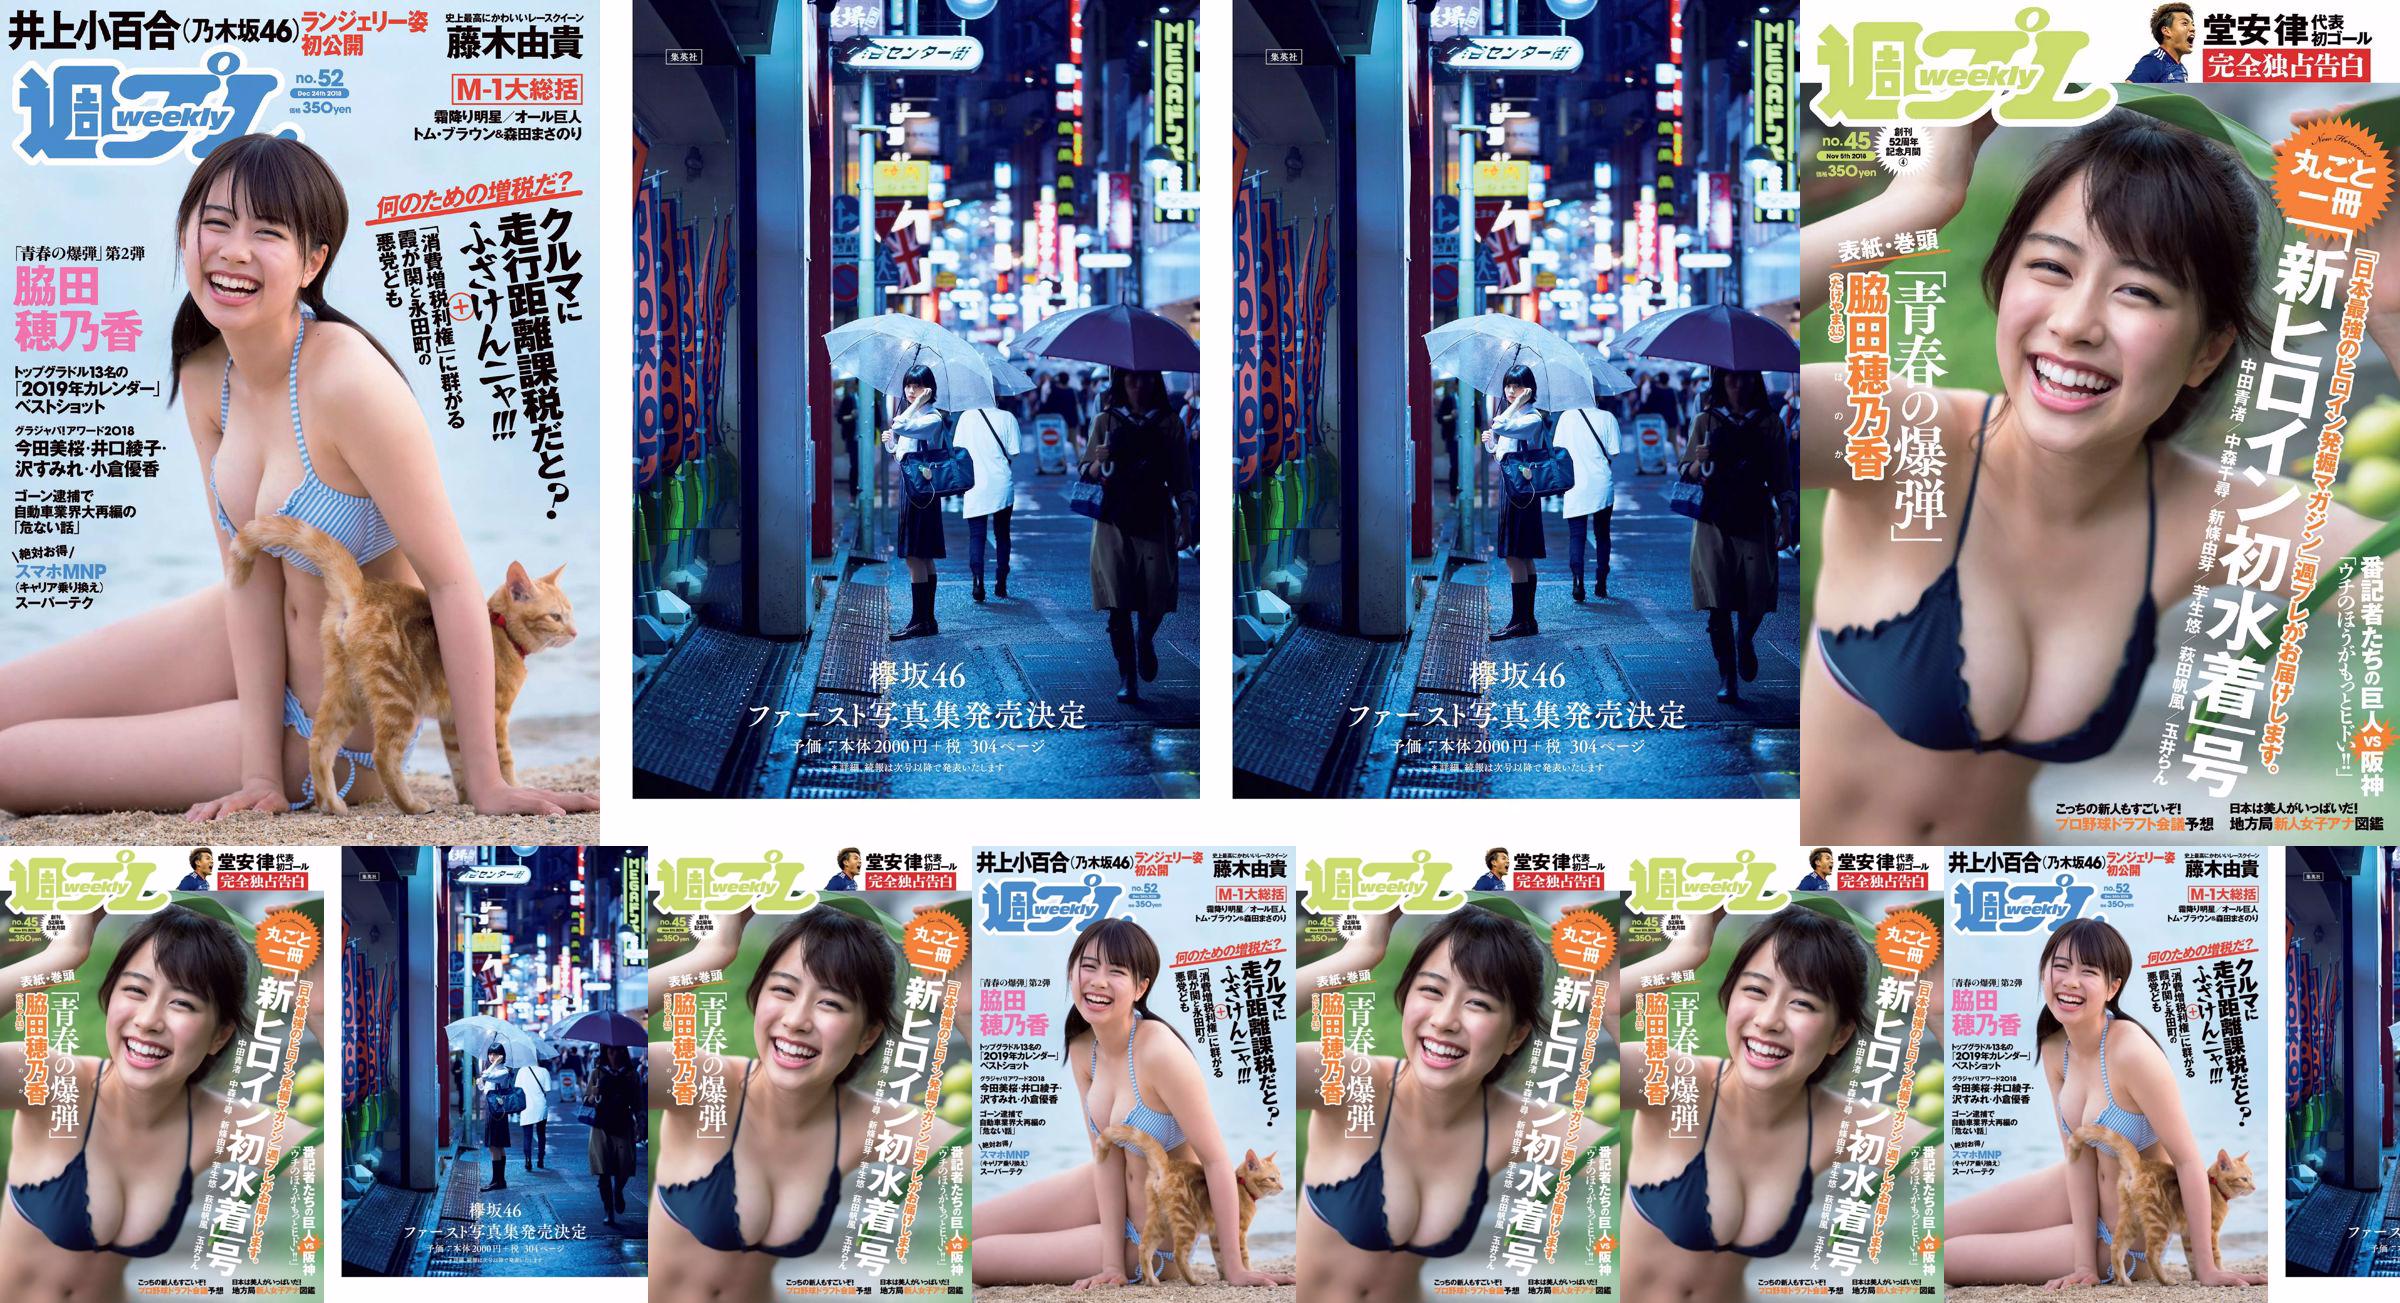 Wakada Honoka, Inoue Sayuri, Mizusawa Yuno, Fujiki Yuki, Koizumi Haruka, Kaito みらい, Tachiki Ayano [Weekly Playboy] 2018 No.52 Photo Magazine No.0908e6 Seite 1